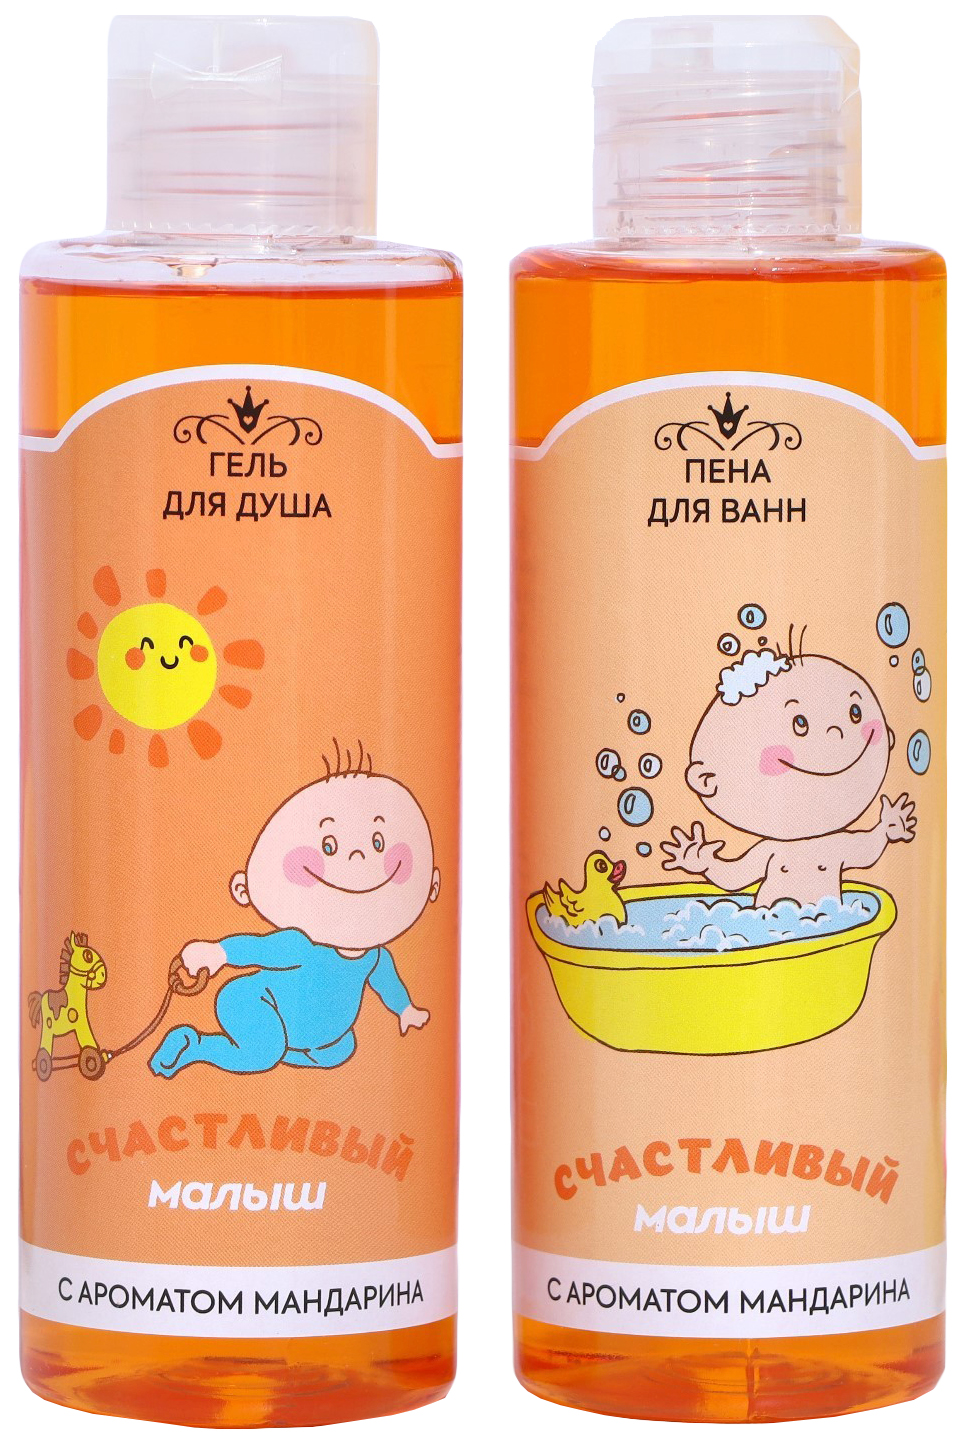 Универсальный набор для детей Счастливый малыш (гель для душа + пена для ванн) аромат ма